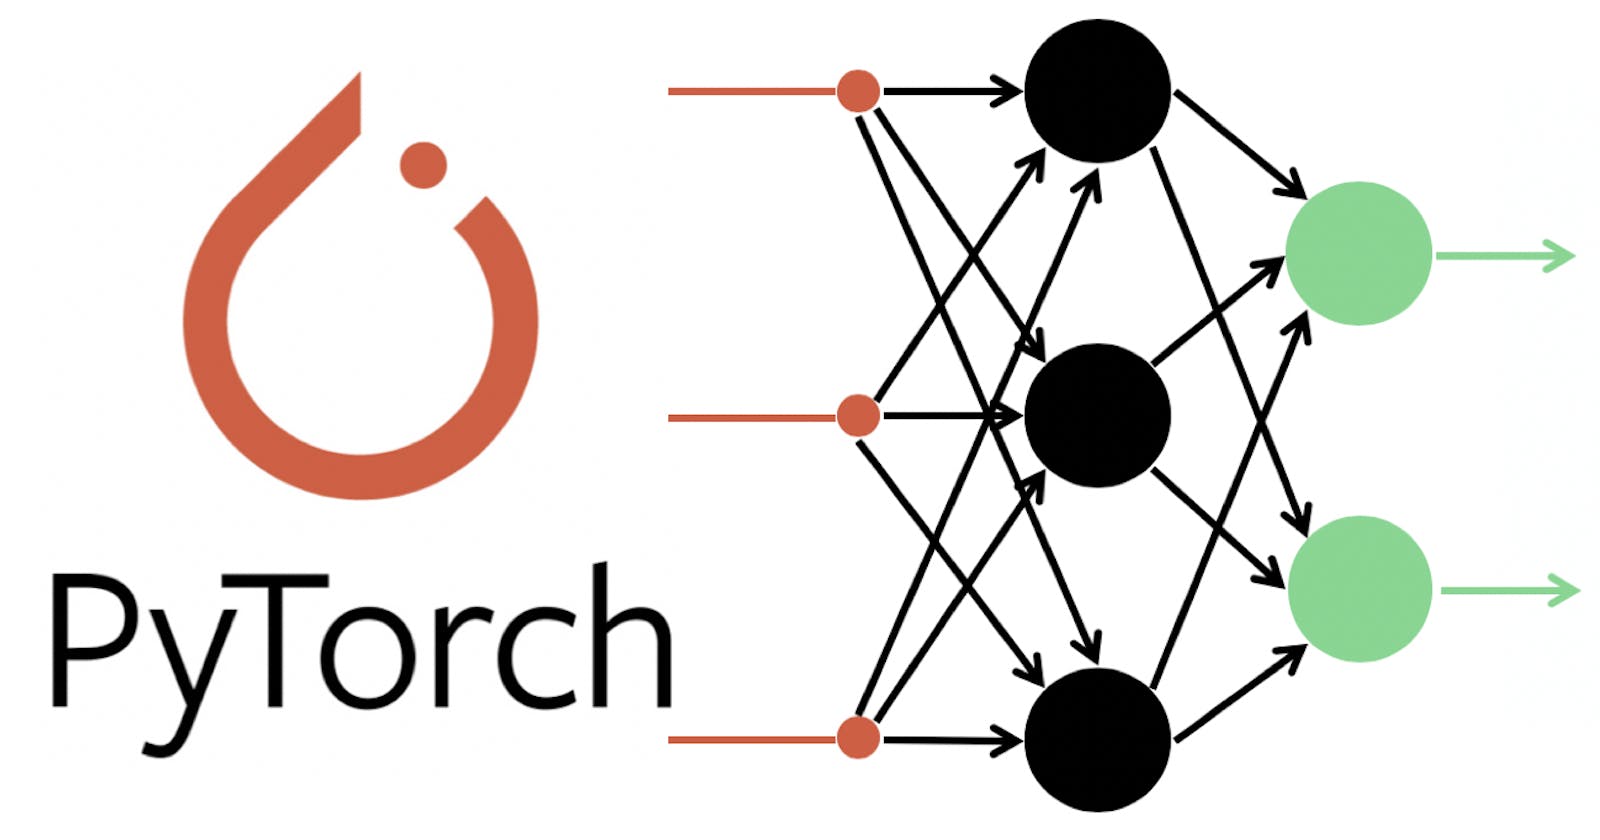 Feed Forward Networks using PyTorch